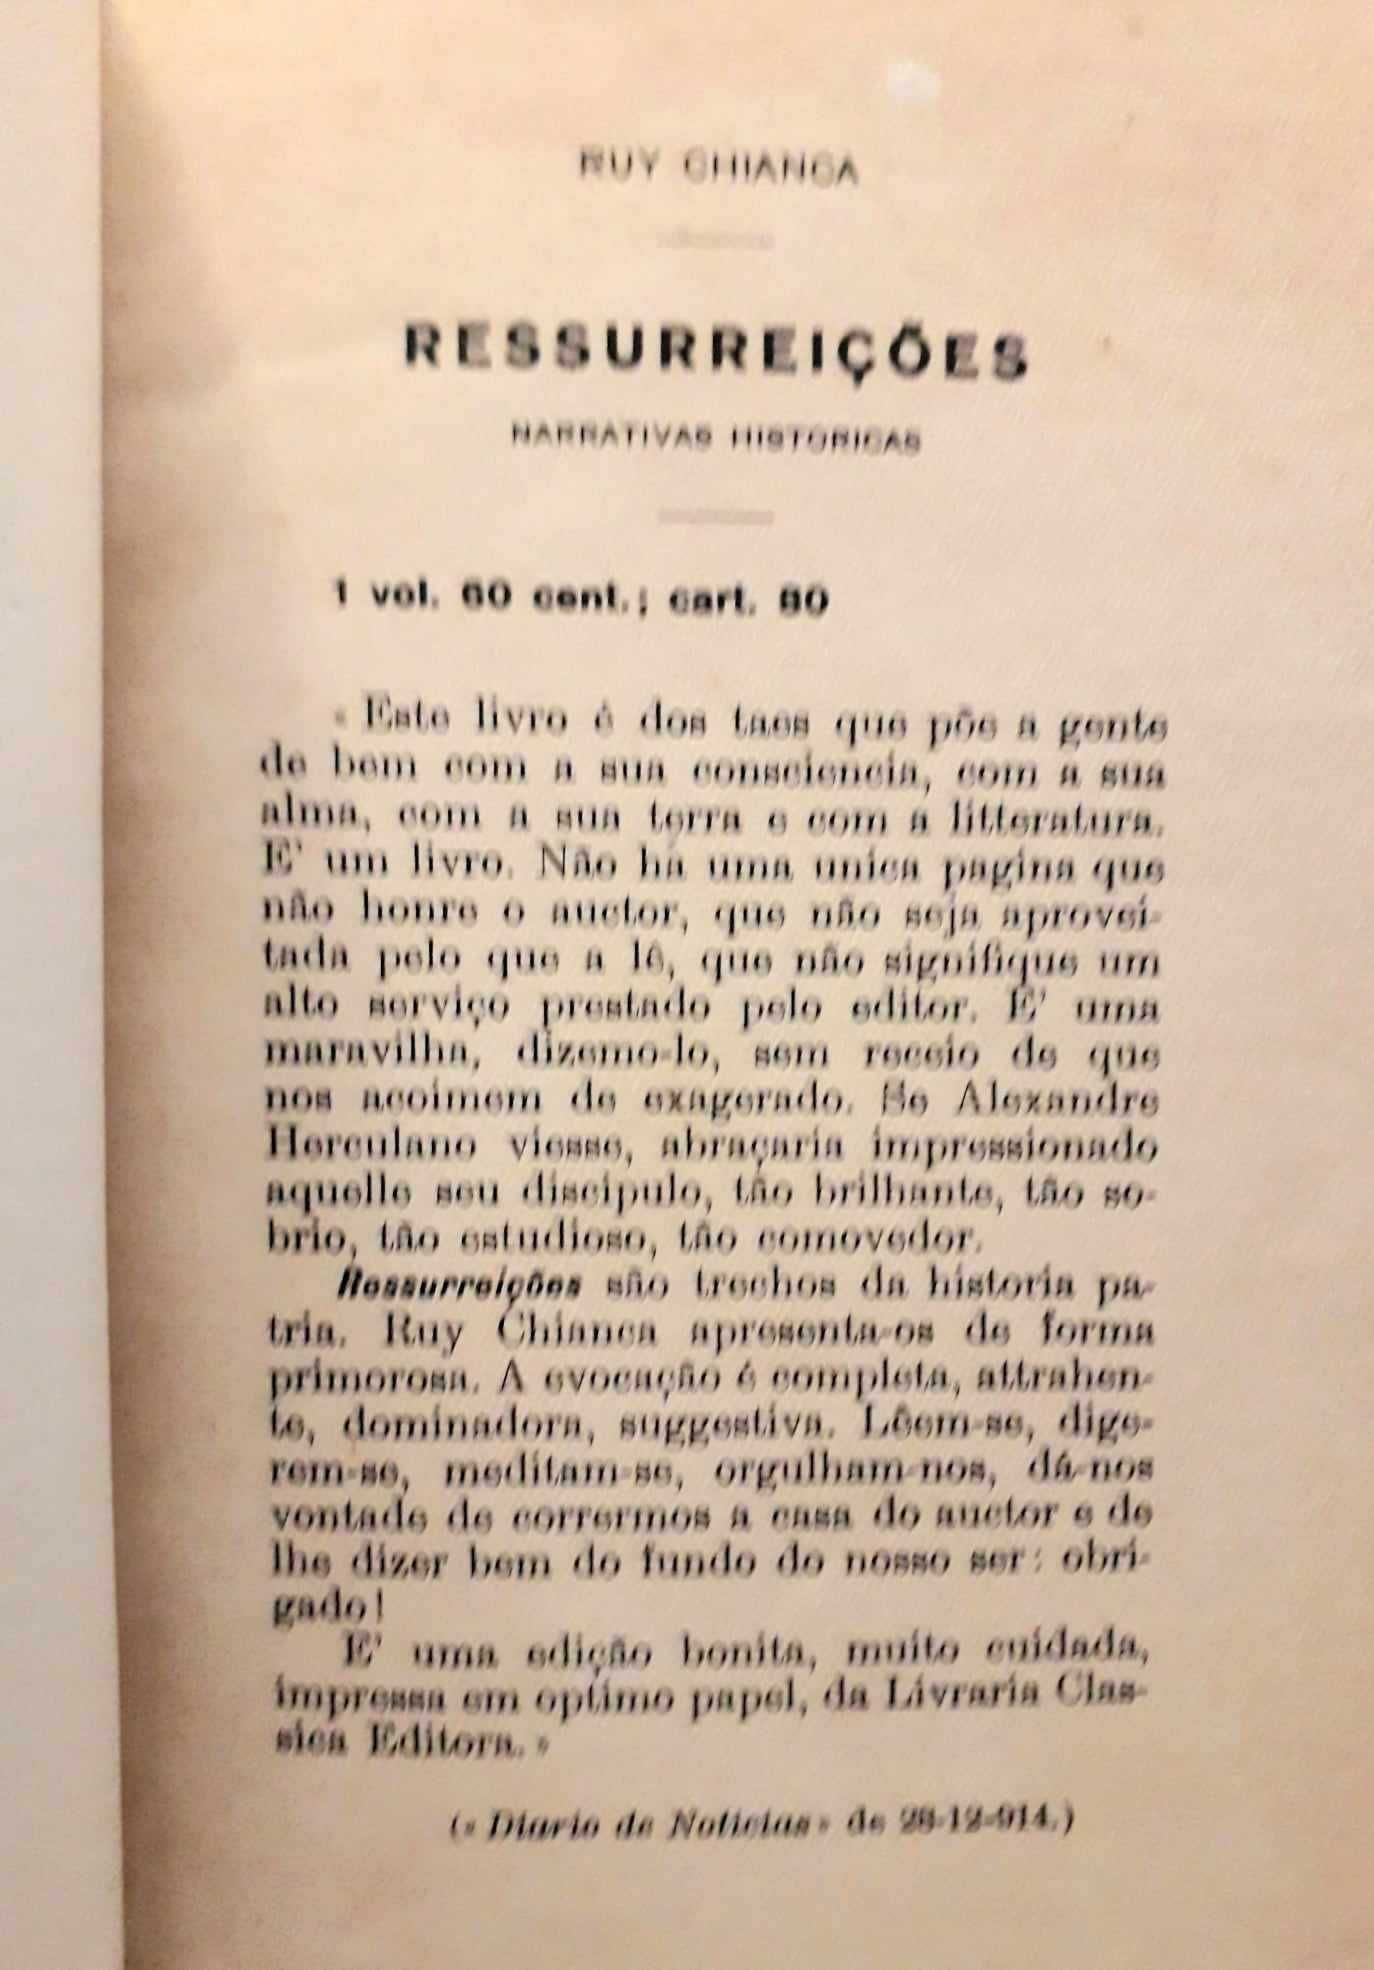 Livro "Aljubarrota" de Ruy Chianca - Lisboa, 1913 - CAPA DURA